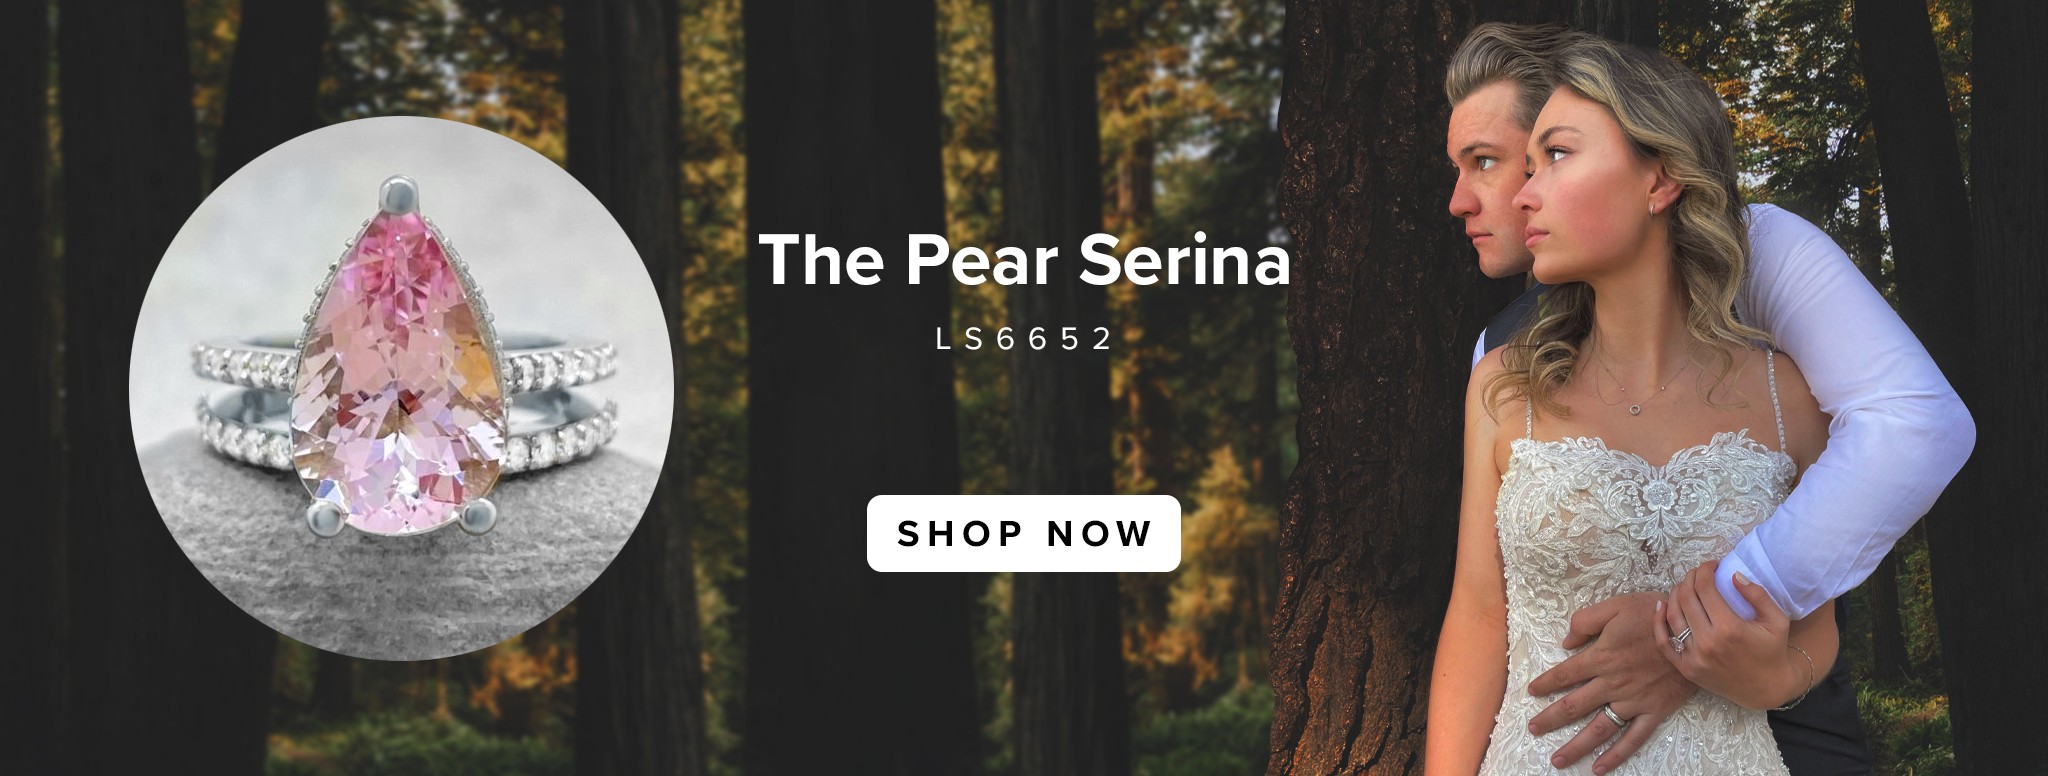 Pear Serina Shop Banner